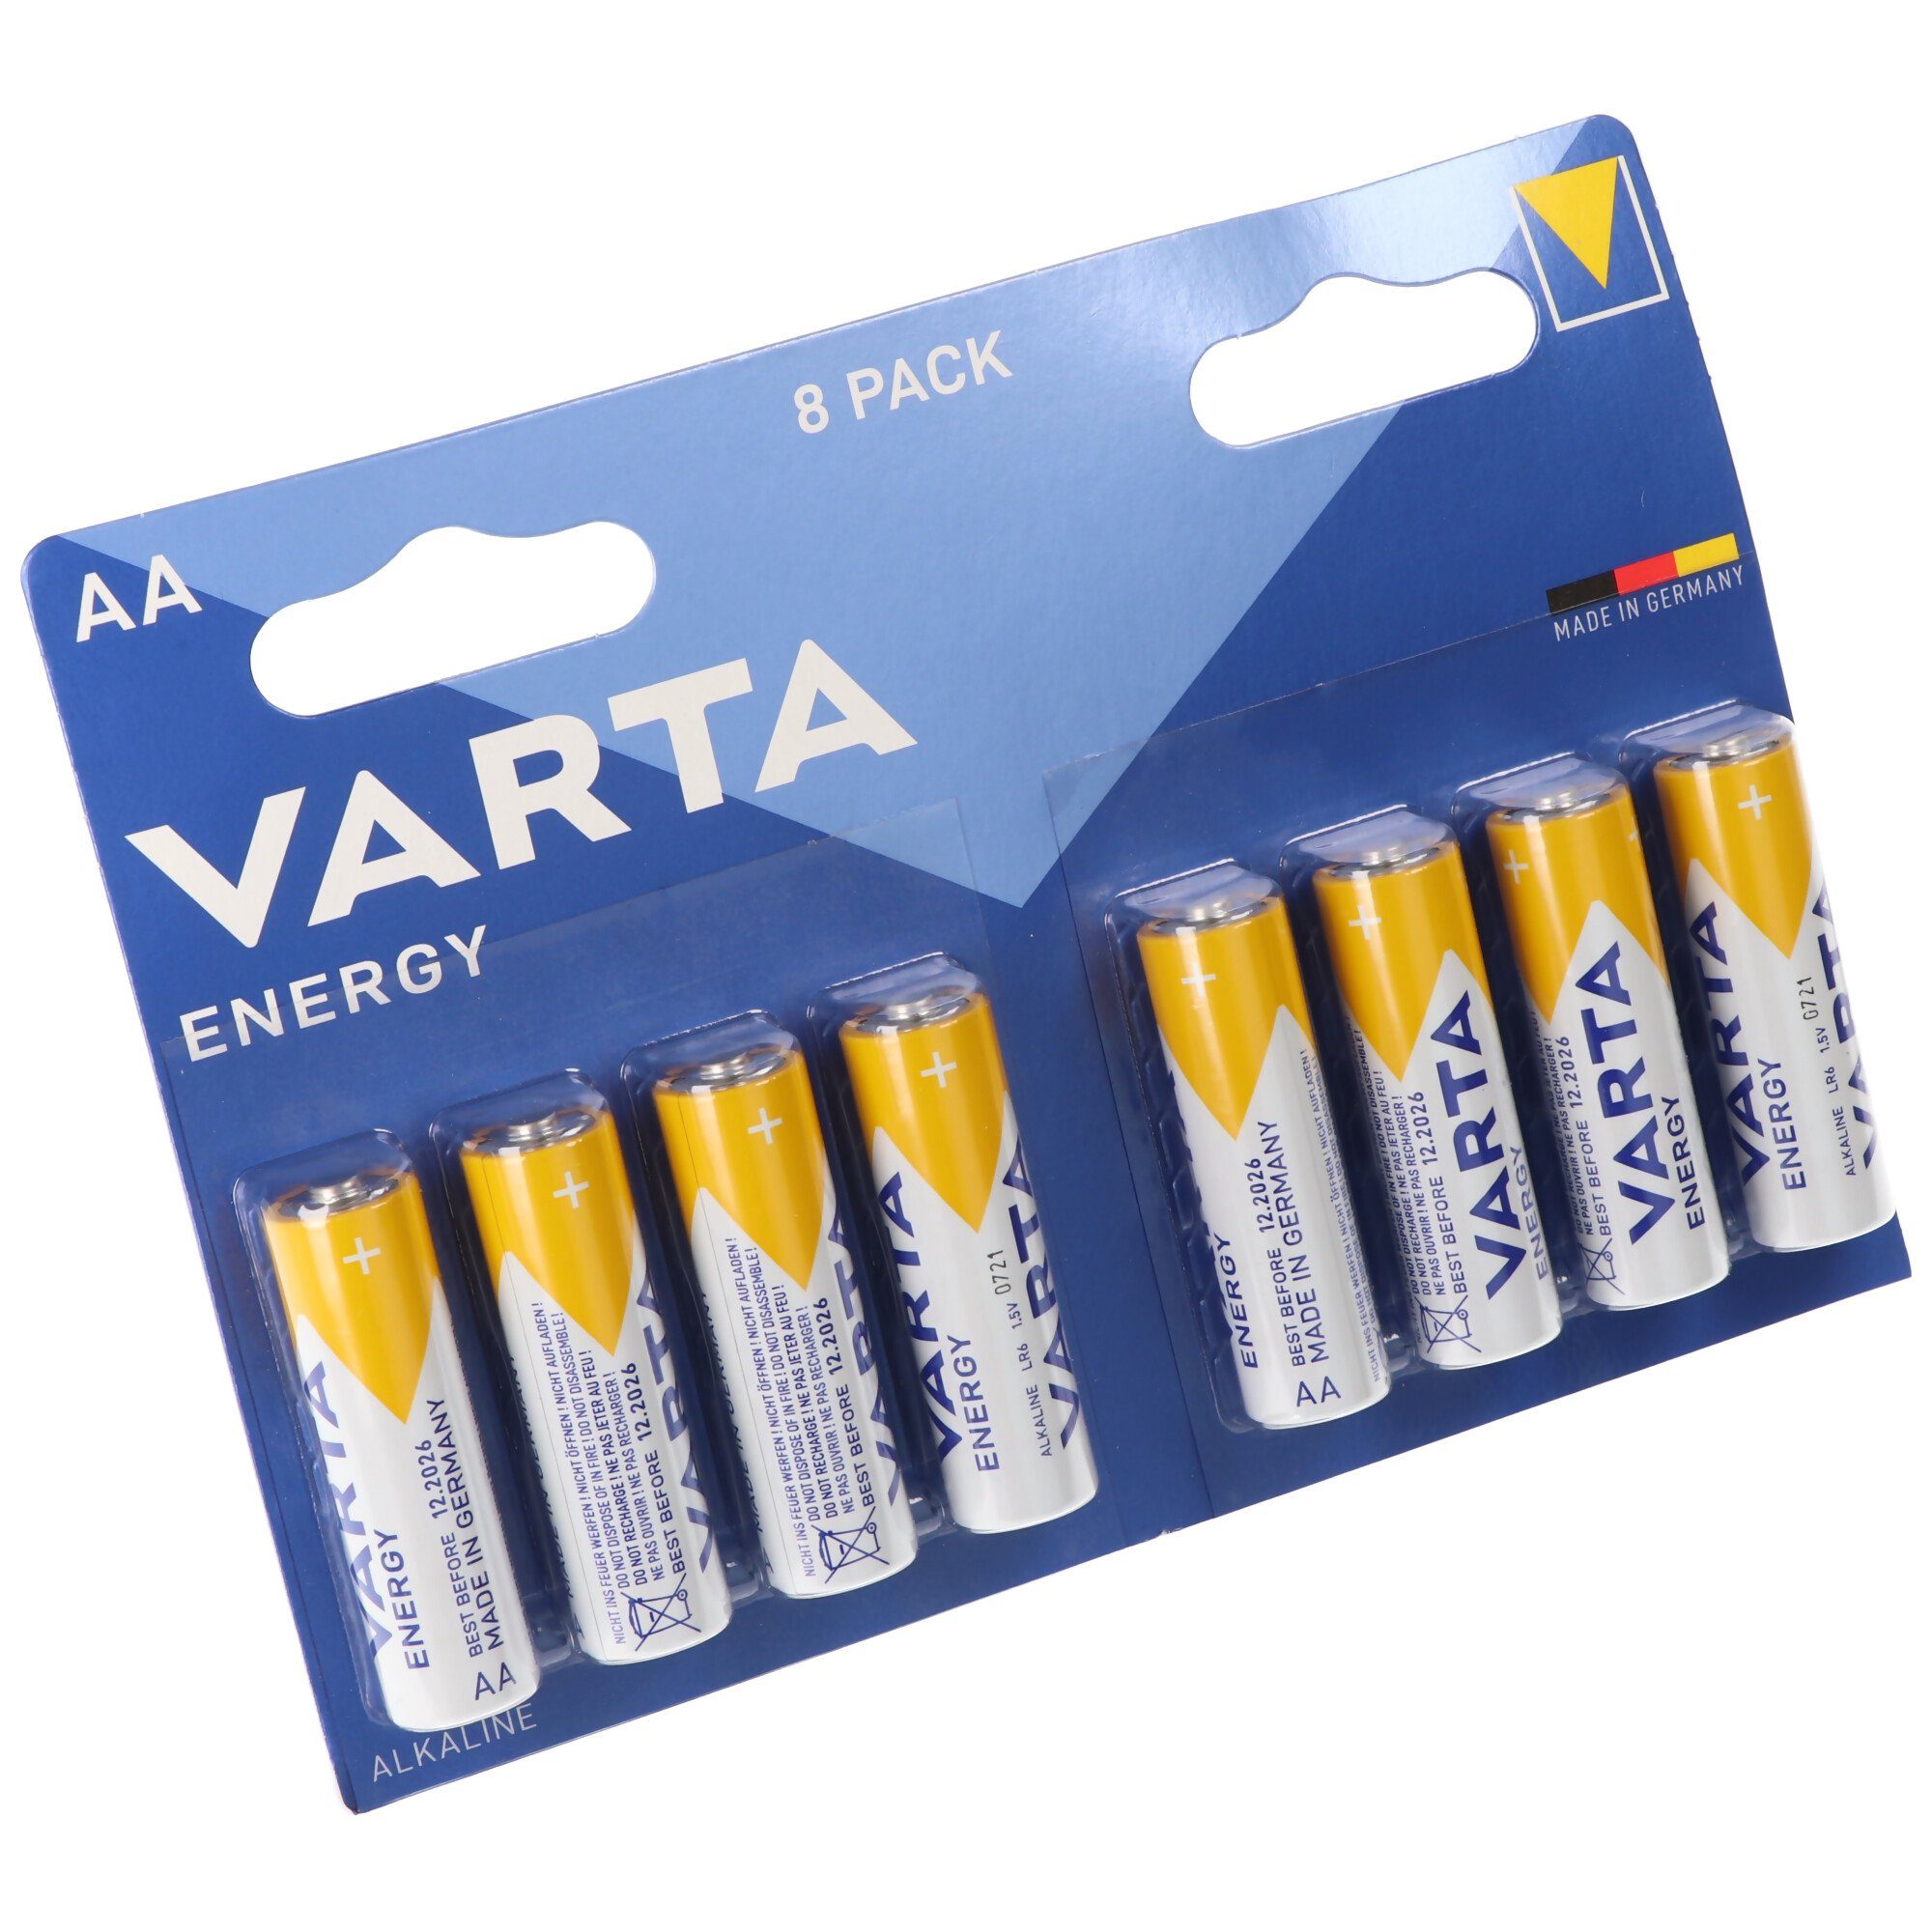 VARTA Varta Energy Batterie Alkaline, Mignon, AA, LR06, 1.5V 8er Pack Batterie, (1,5 V)